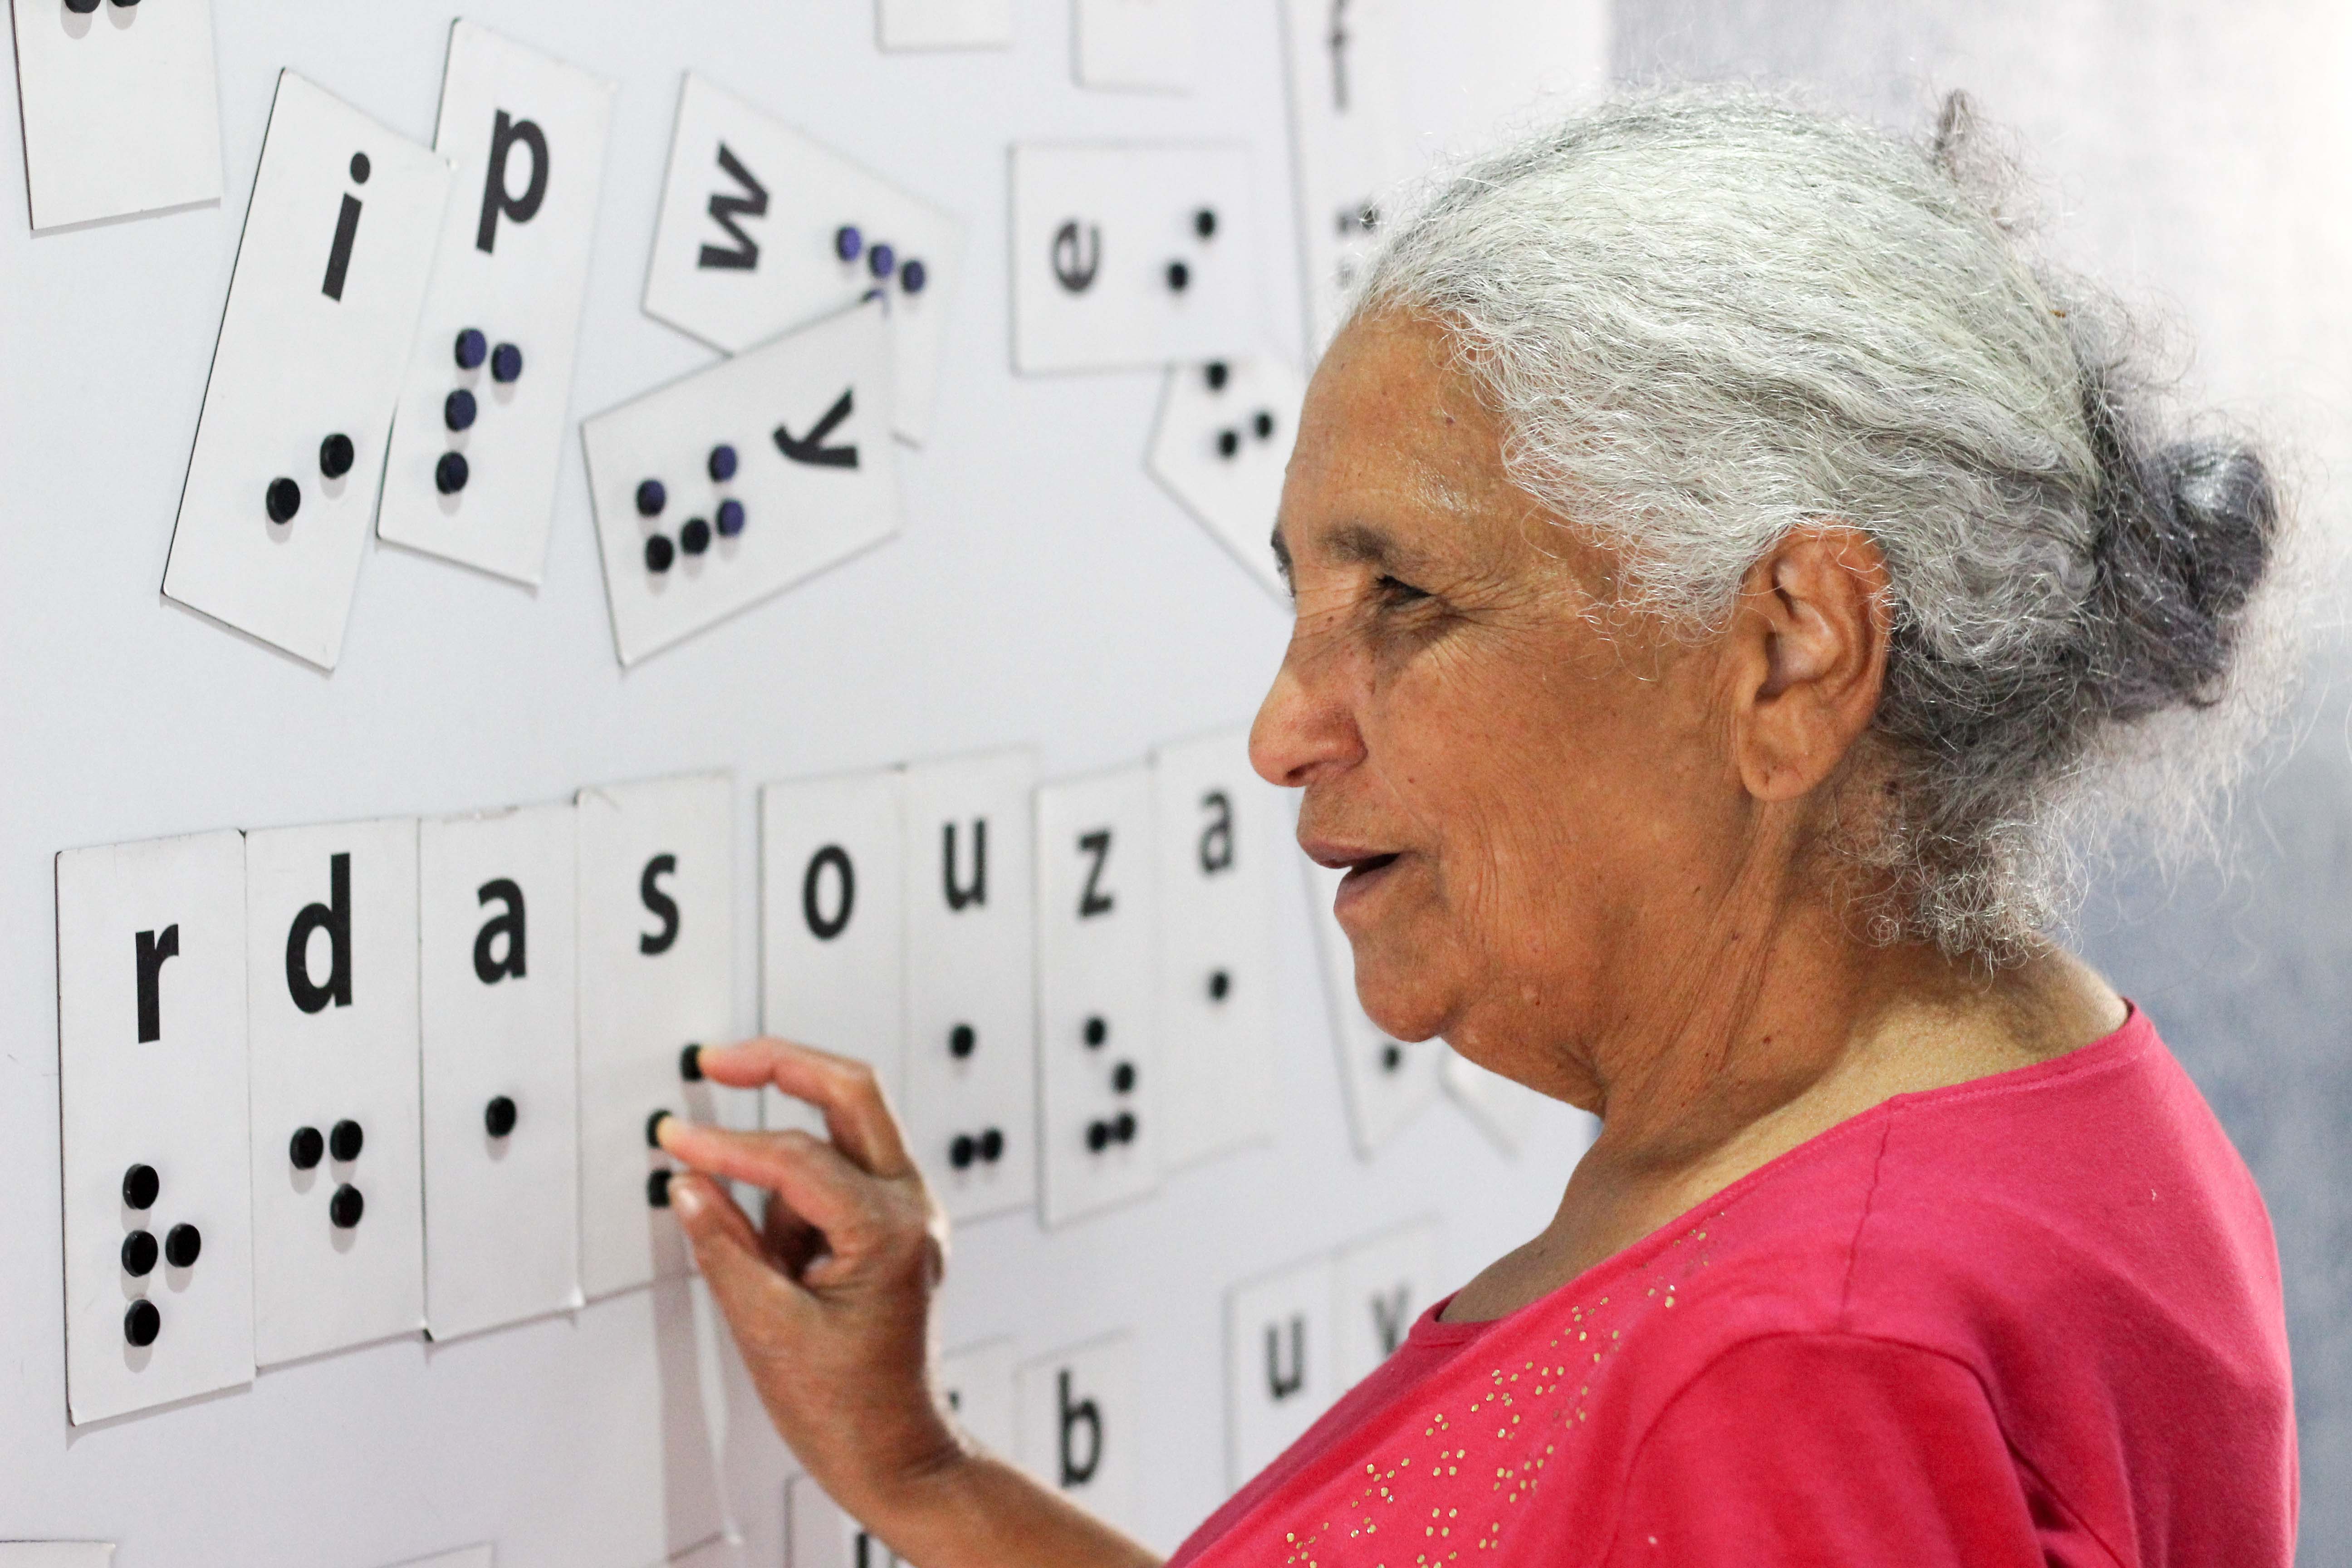 Descrição da imagem: foto de Dona Maria tateando um painel magnético com várias letras em braille embaralhadas. Ela está de perfil.